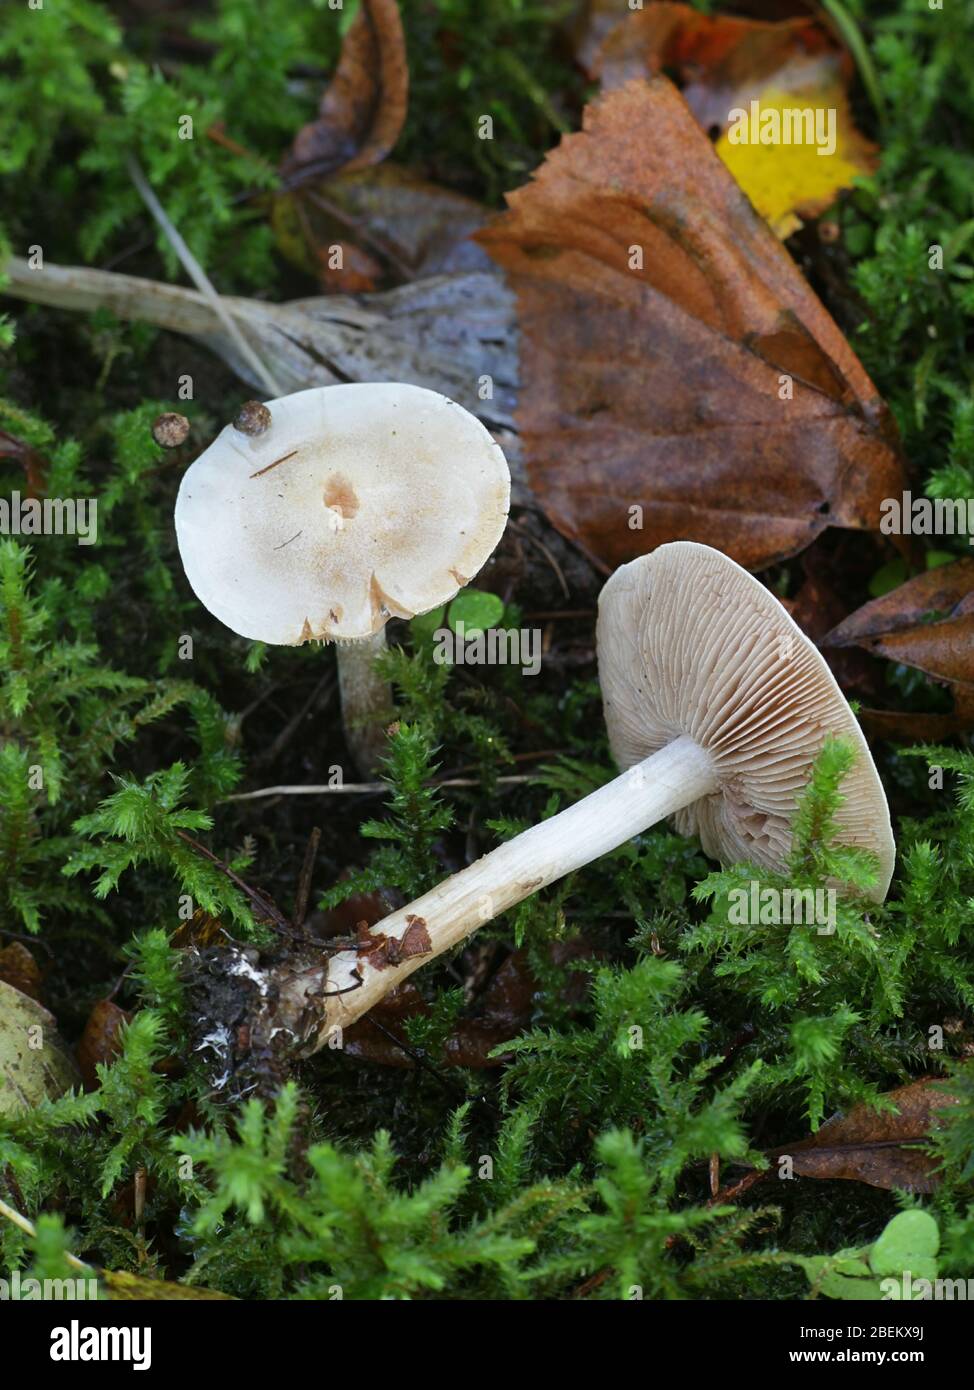 Hebeloma crustuliniforme, noto come veleno o a torta poisonpie, selvatici funghi velenosi dalla Finlandia Foto Stock